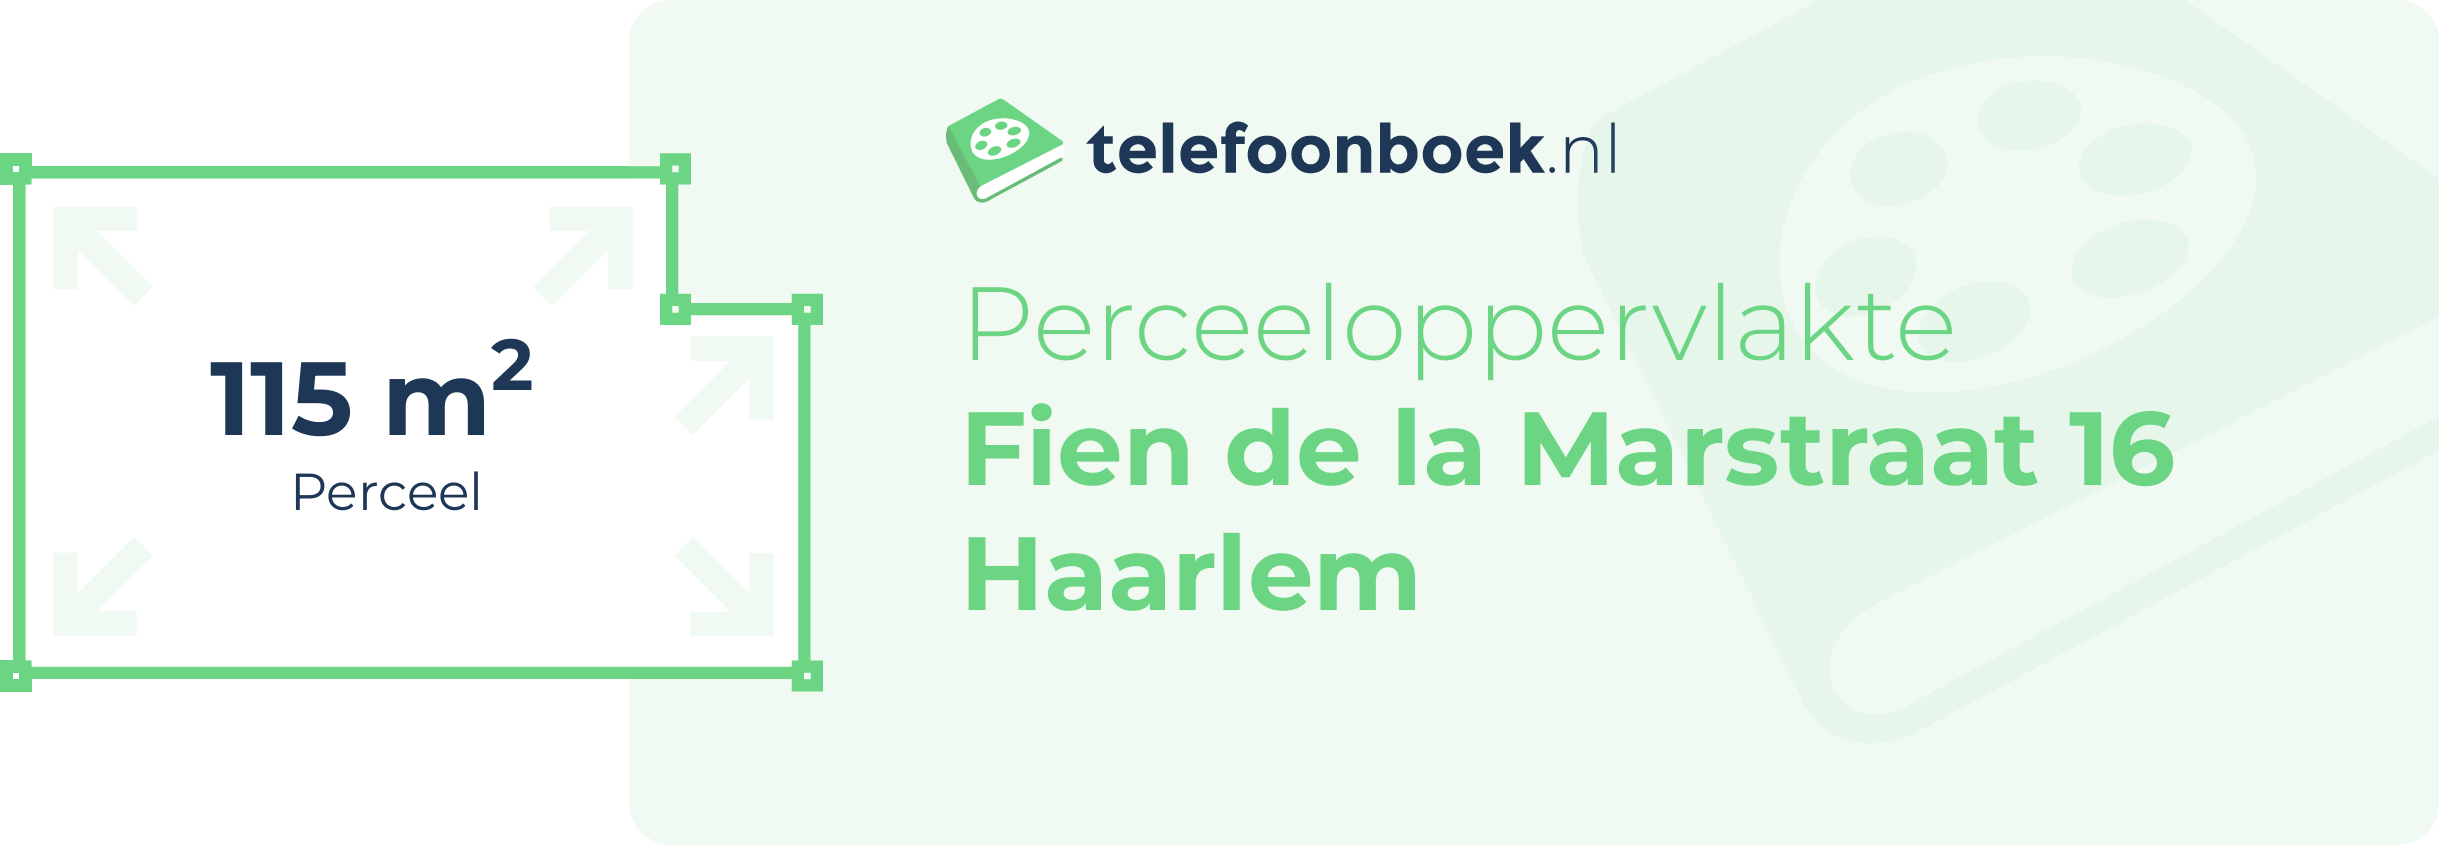 Perceeloppervlakte Fien De La Marstraat 16 Haarlem